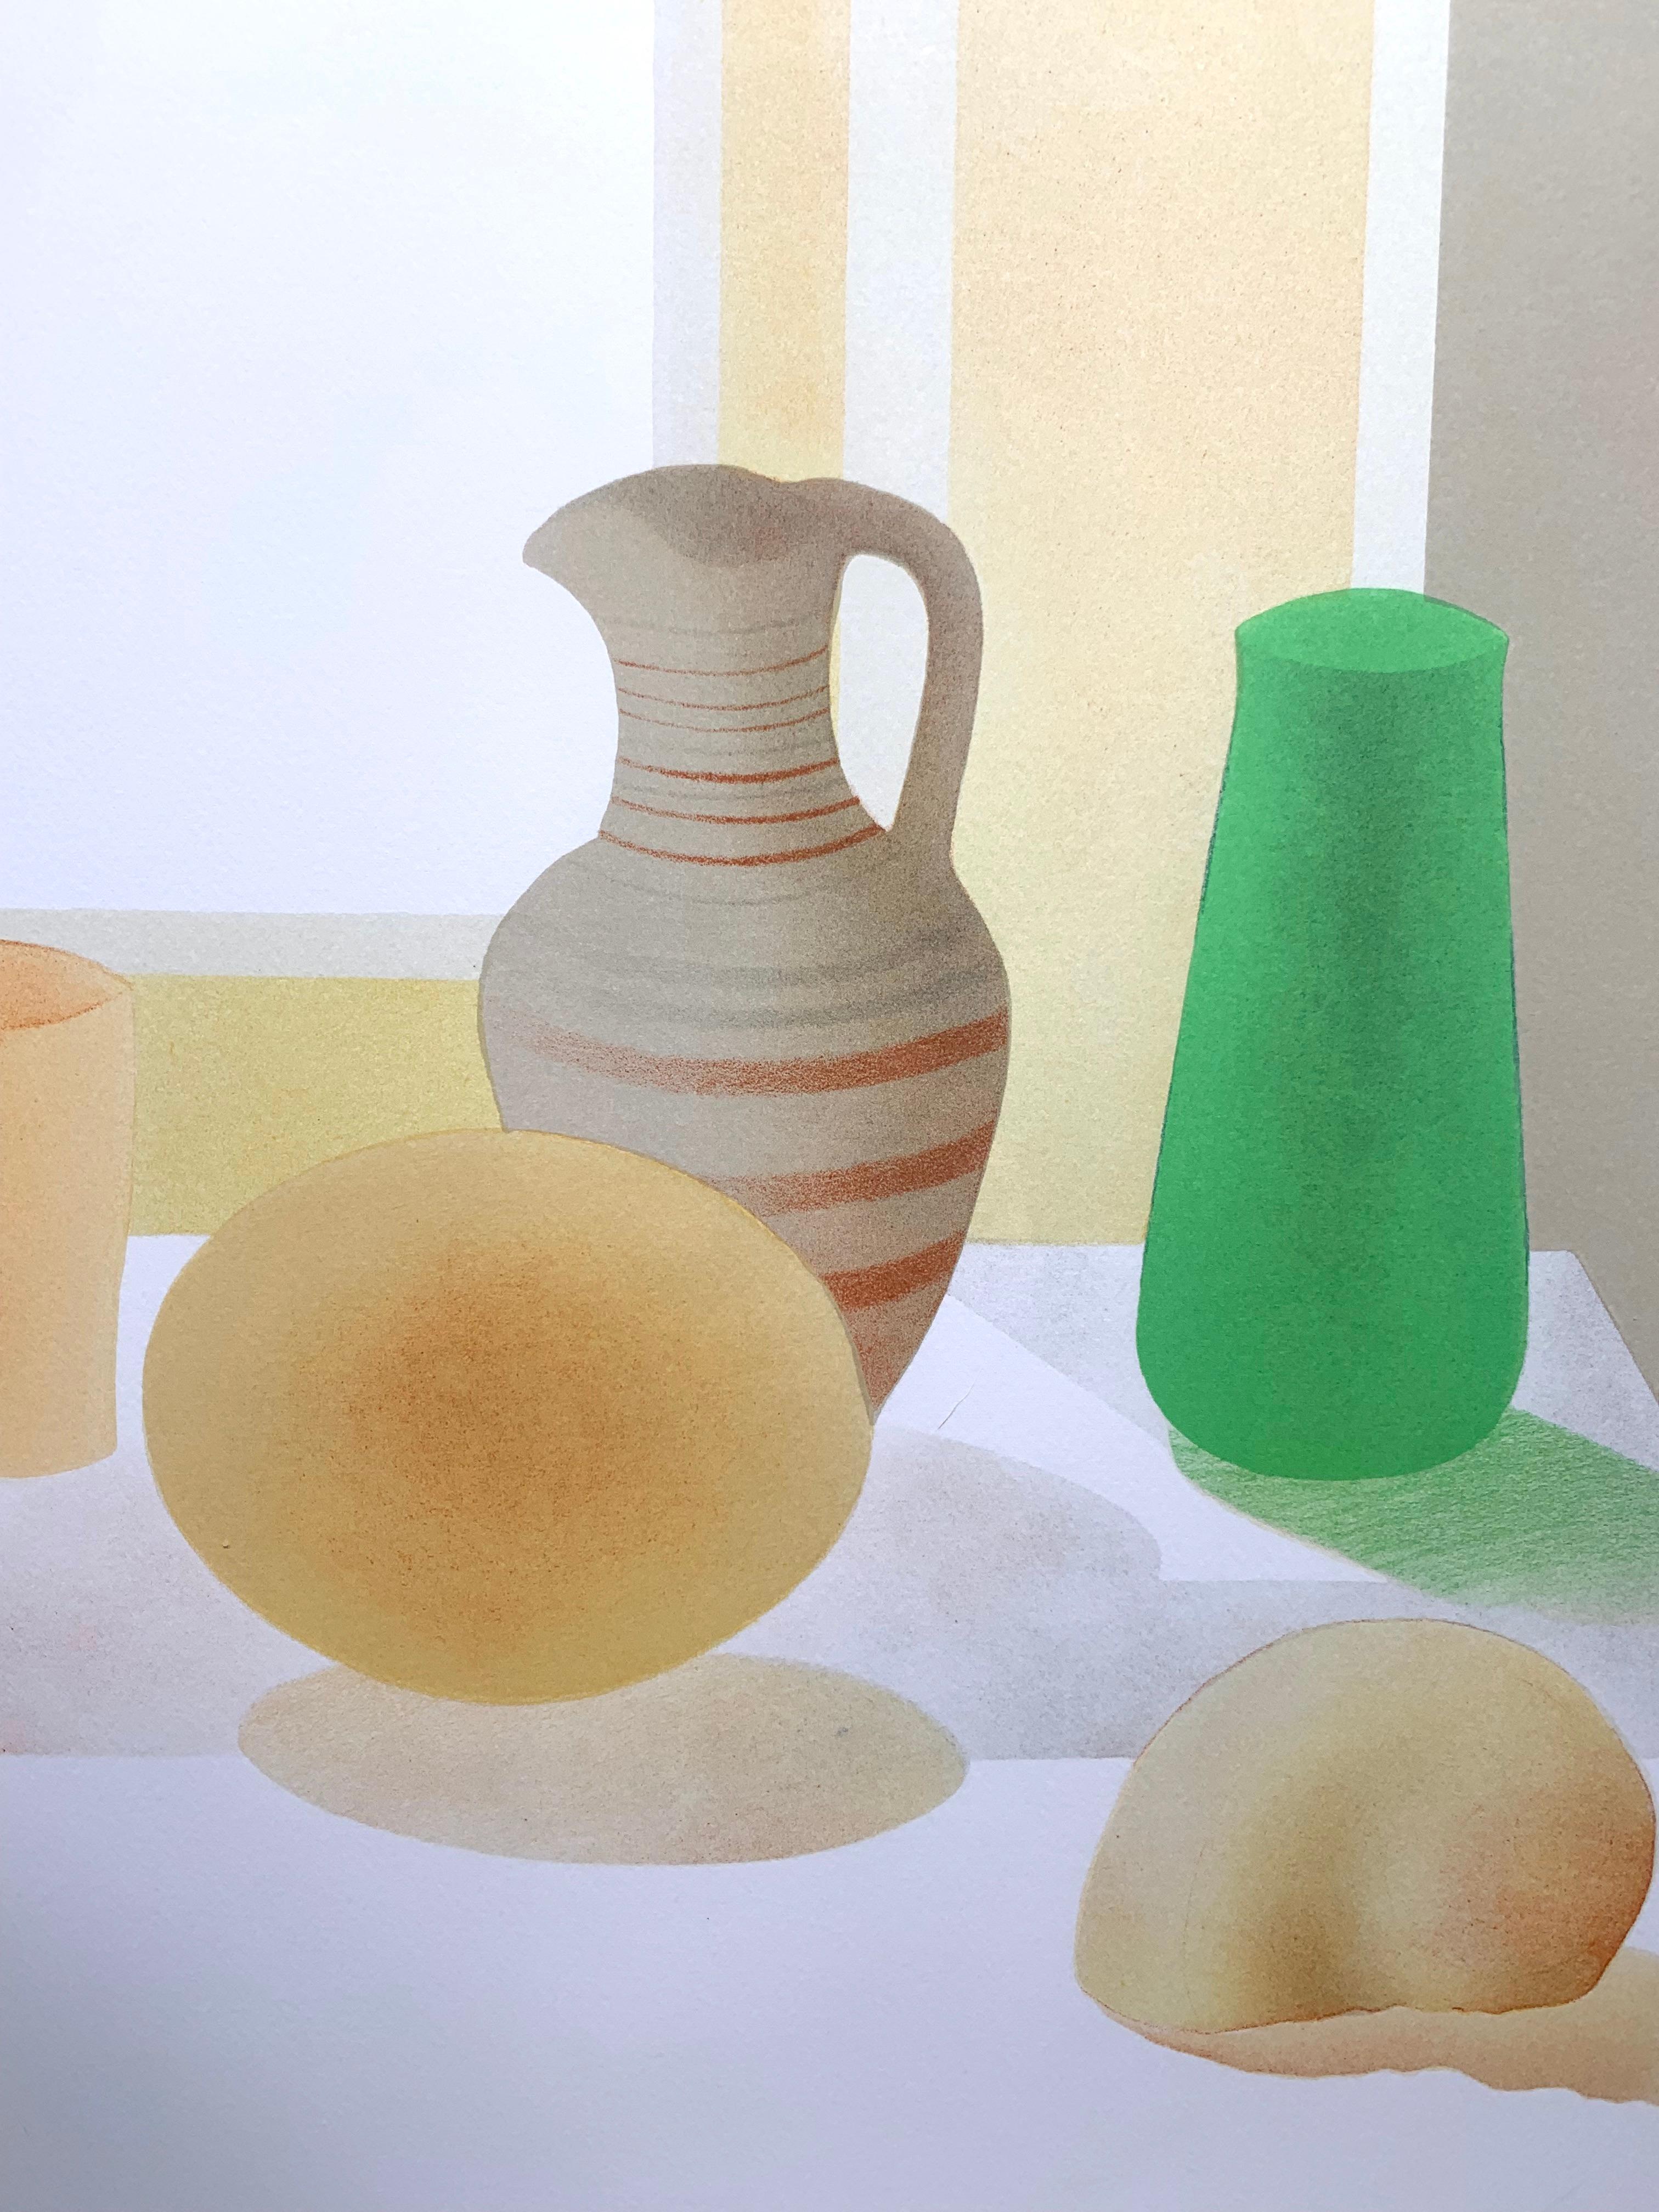 Still Life with Greek Vase - Print by Elizabeth Osborne